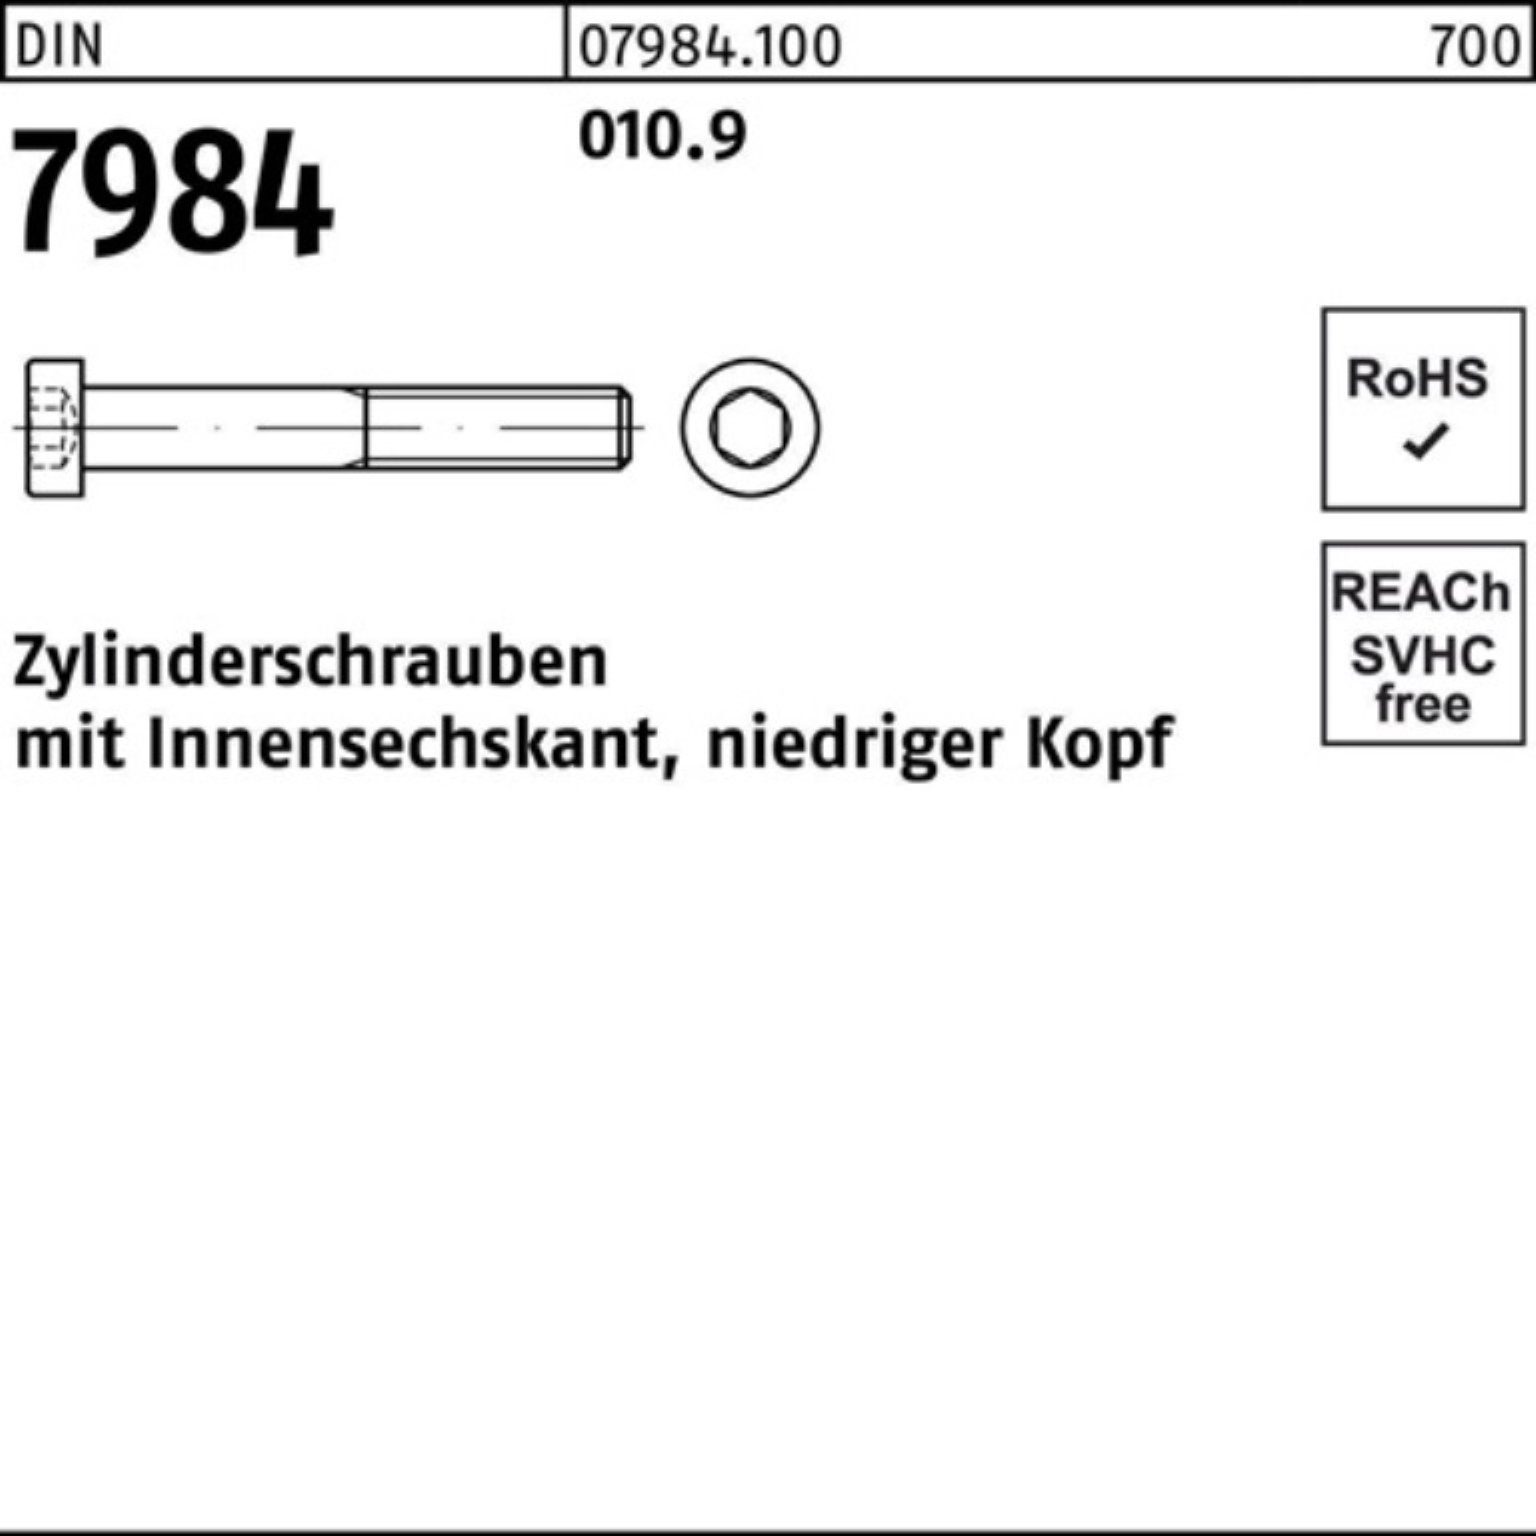 Stück Zylinderschraube Zylinderschraube Pack M5x Reyher 12 500er 500 Innen-6kt 7984 DIN 010.9